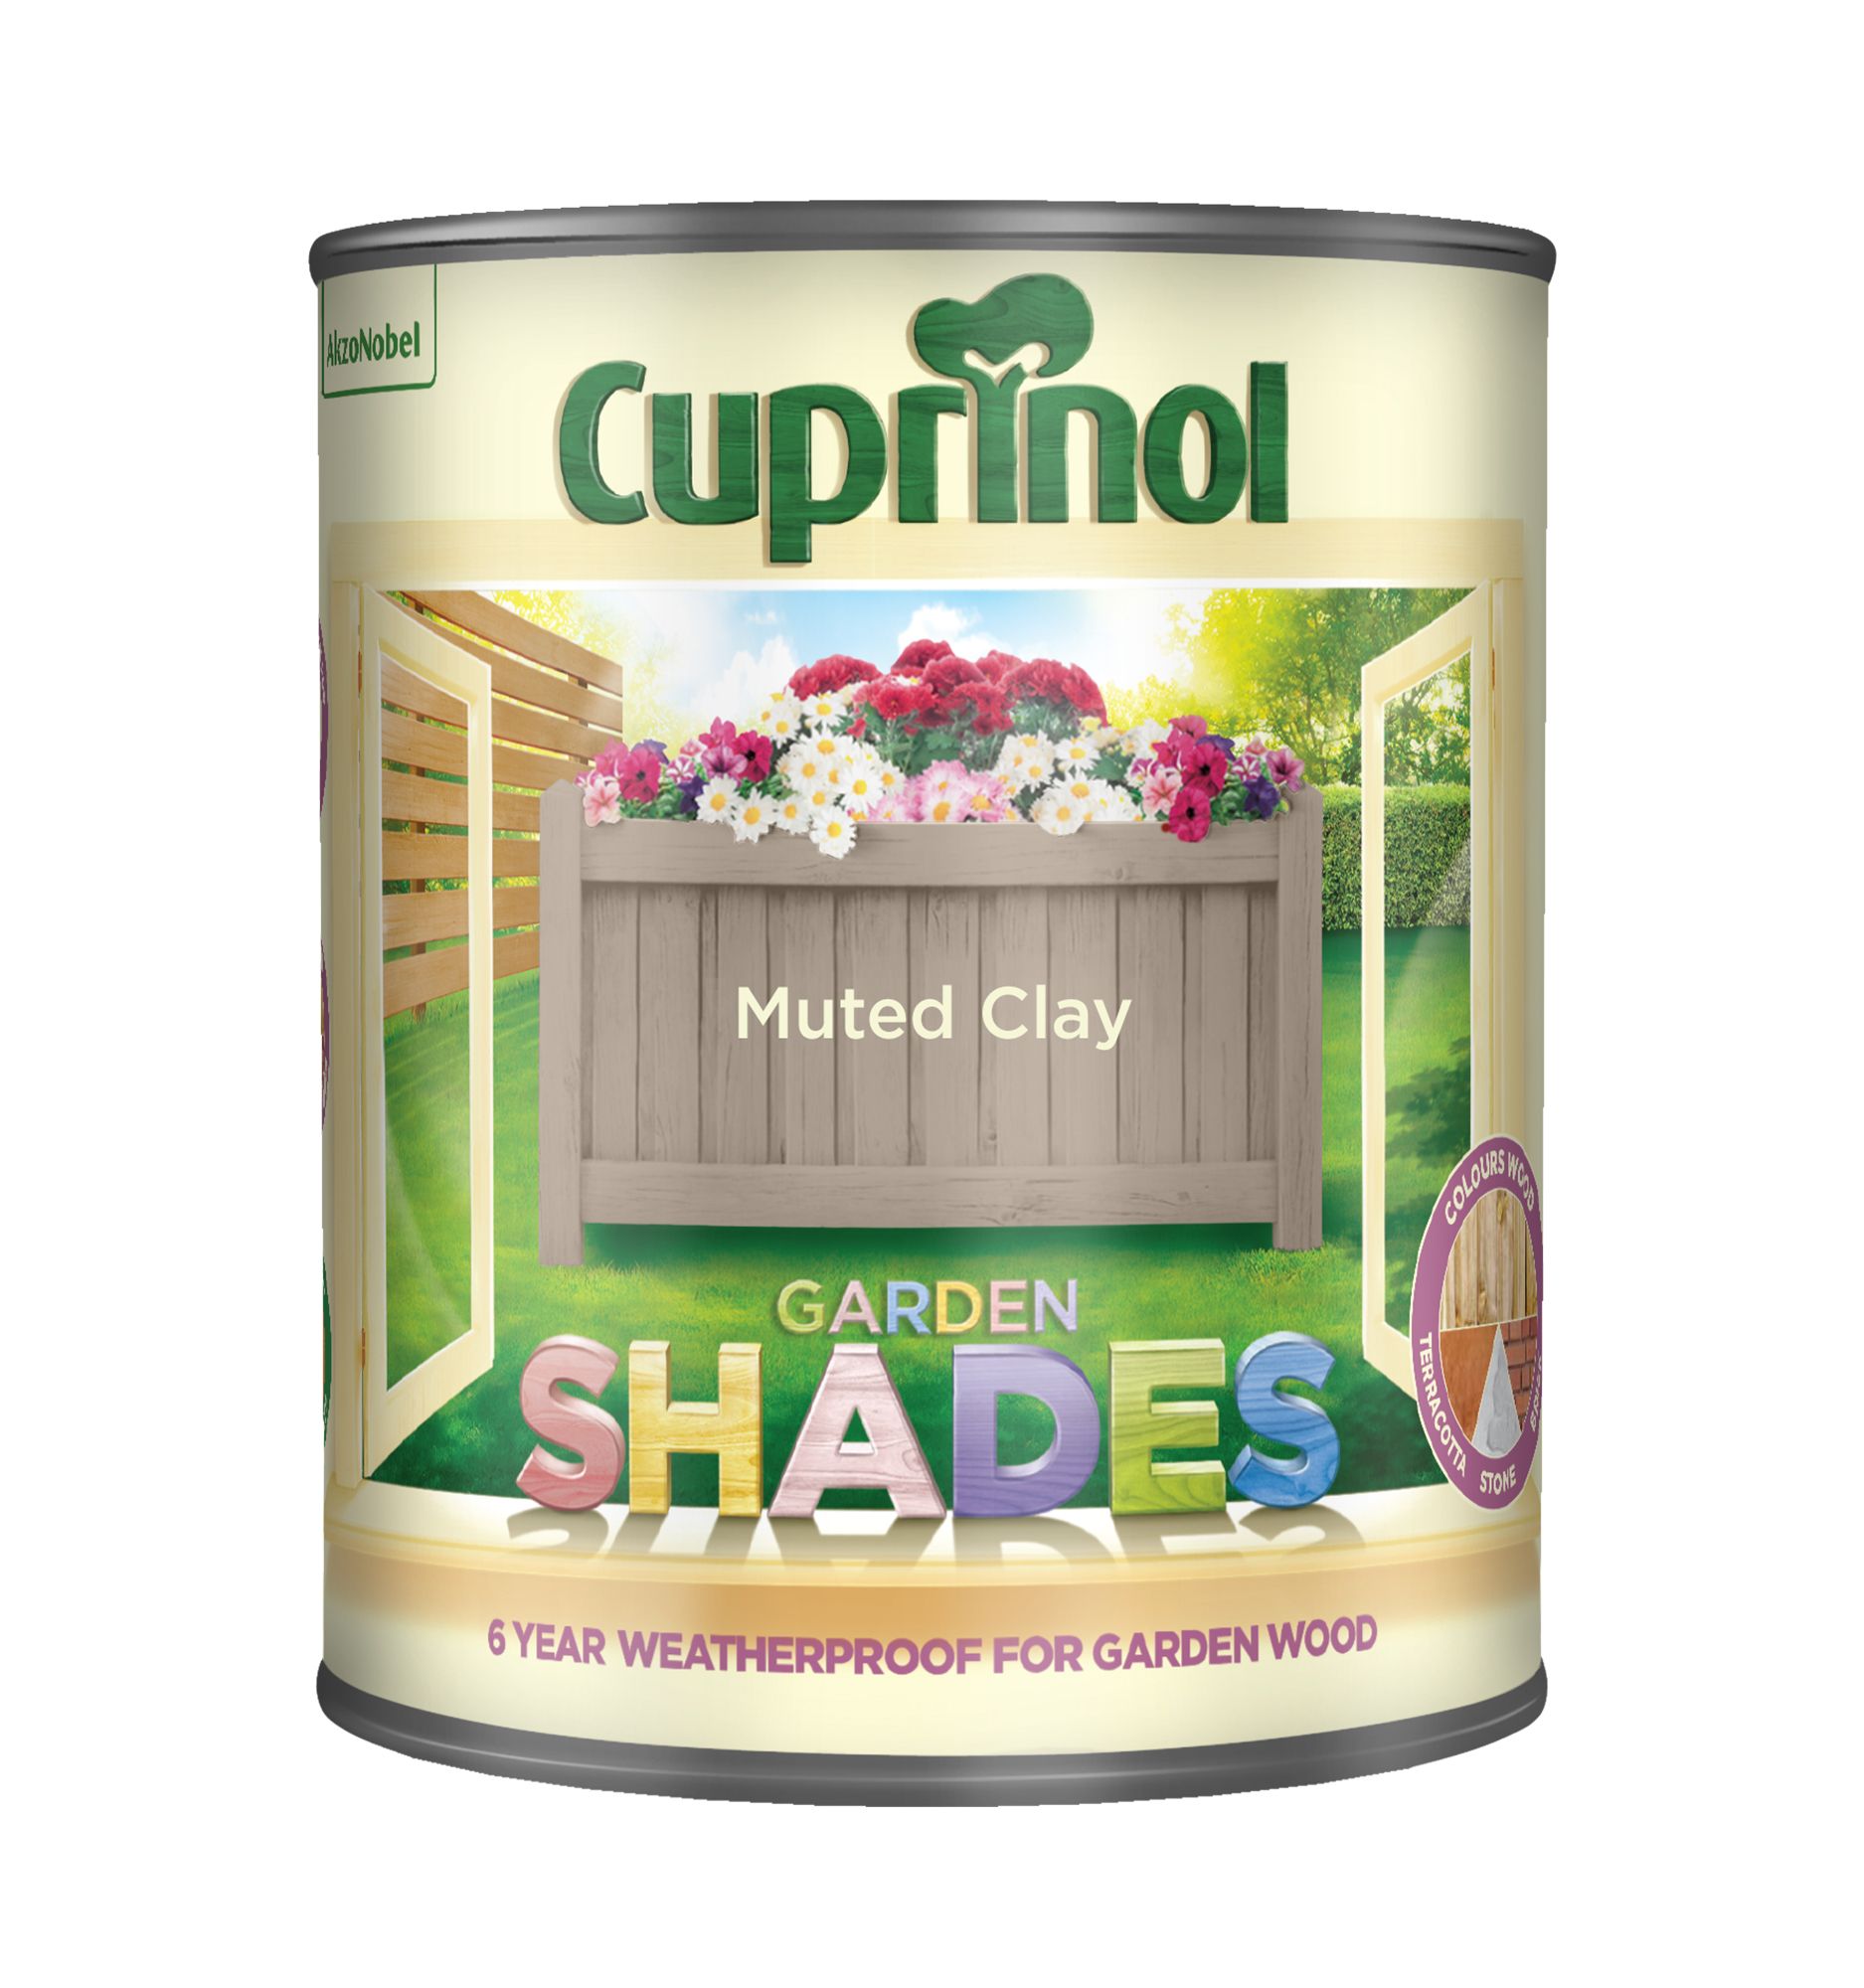 Cuprinol Garden shades Muted clay Matt Multi-surface Exterior Wood paint, 1L